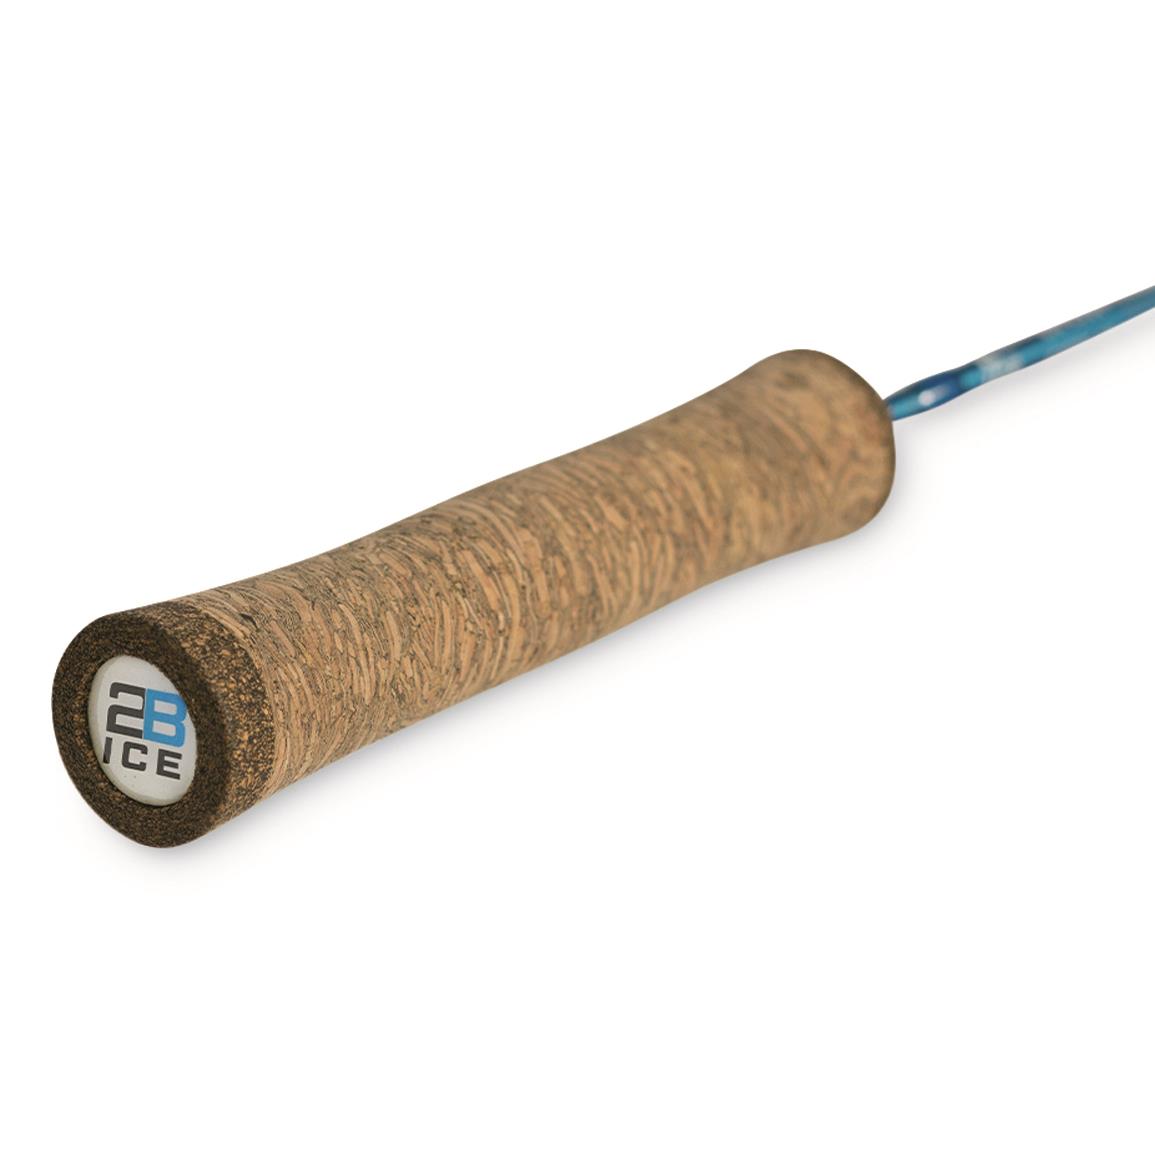 2B Fishing Fast Draw Perch/Walleye Ice Rod, 30 Length, Medium